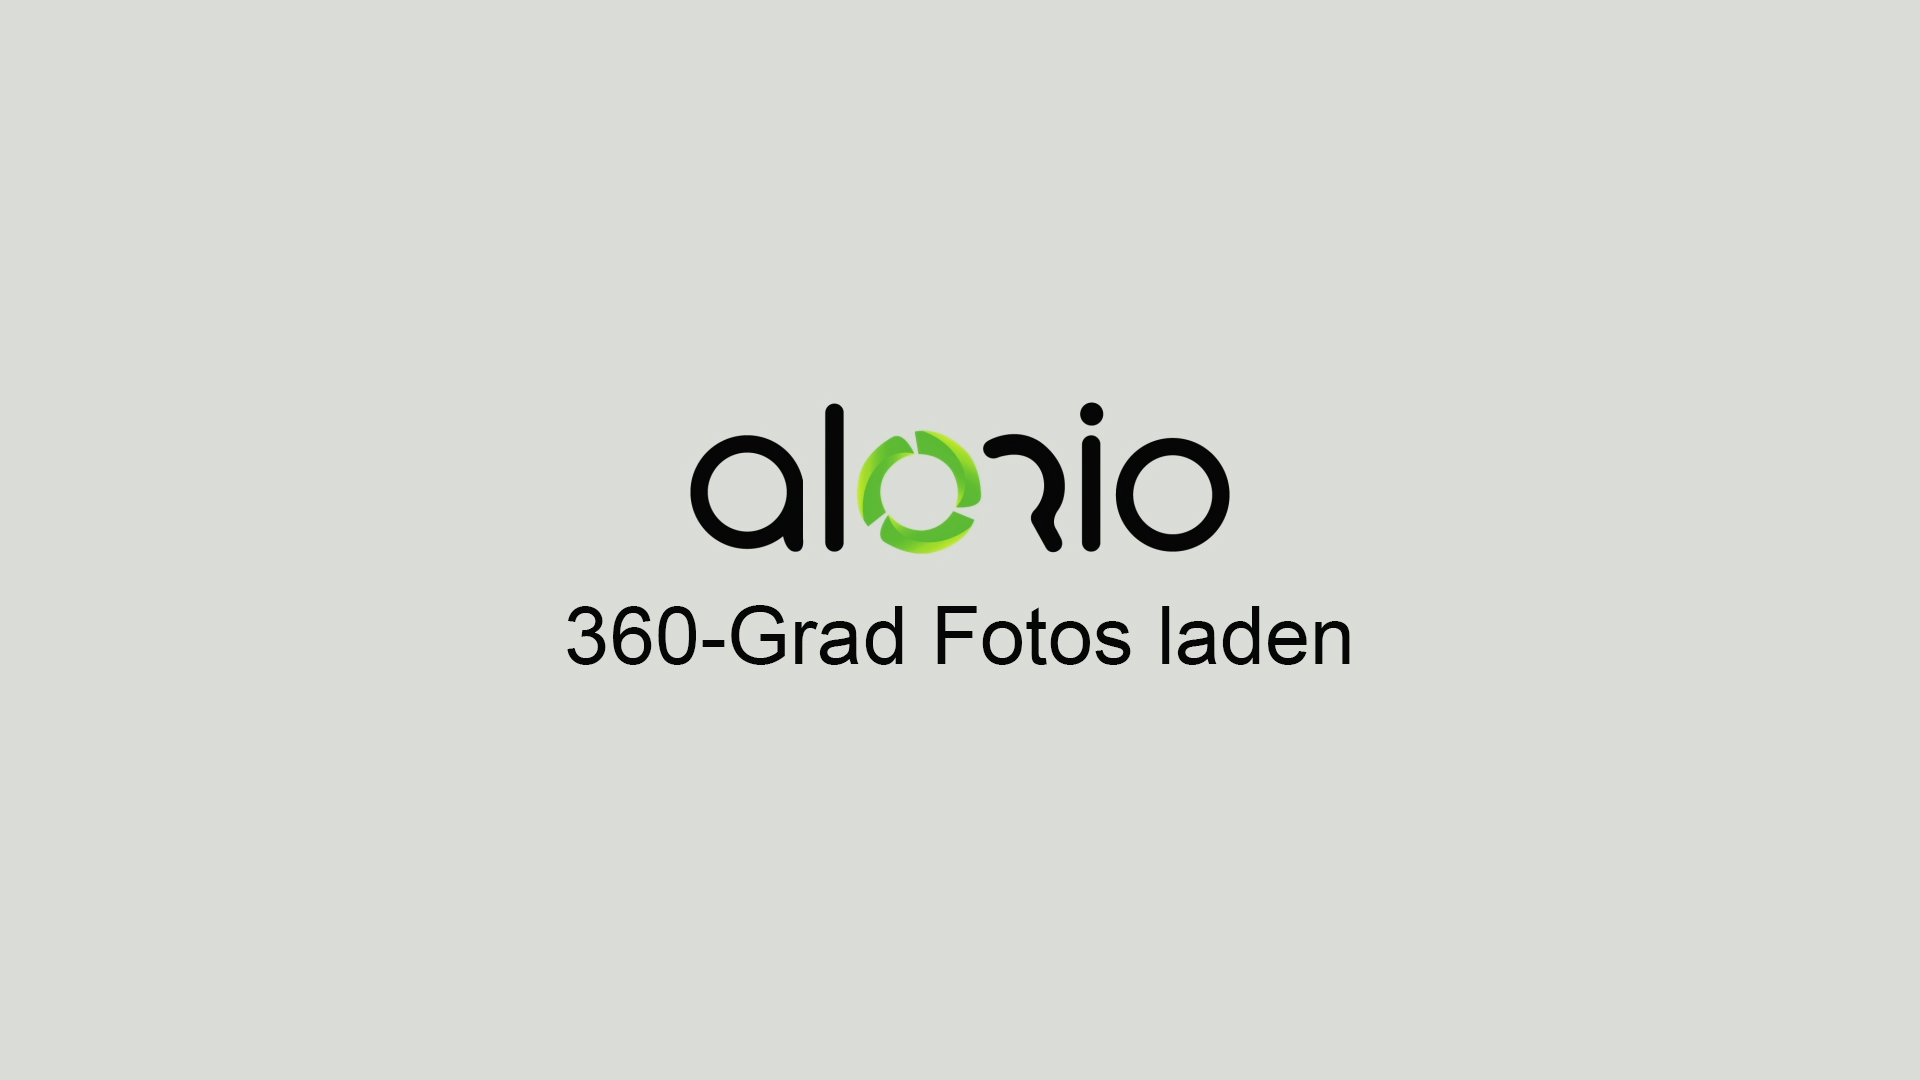 Alorio 360-Grad-Fotos laden